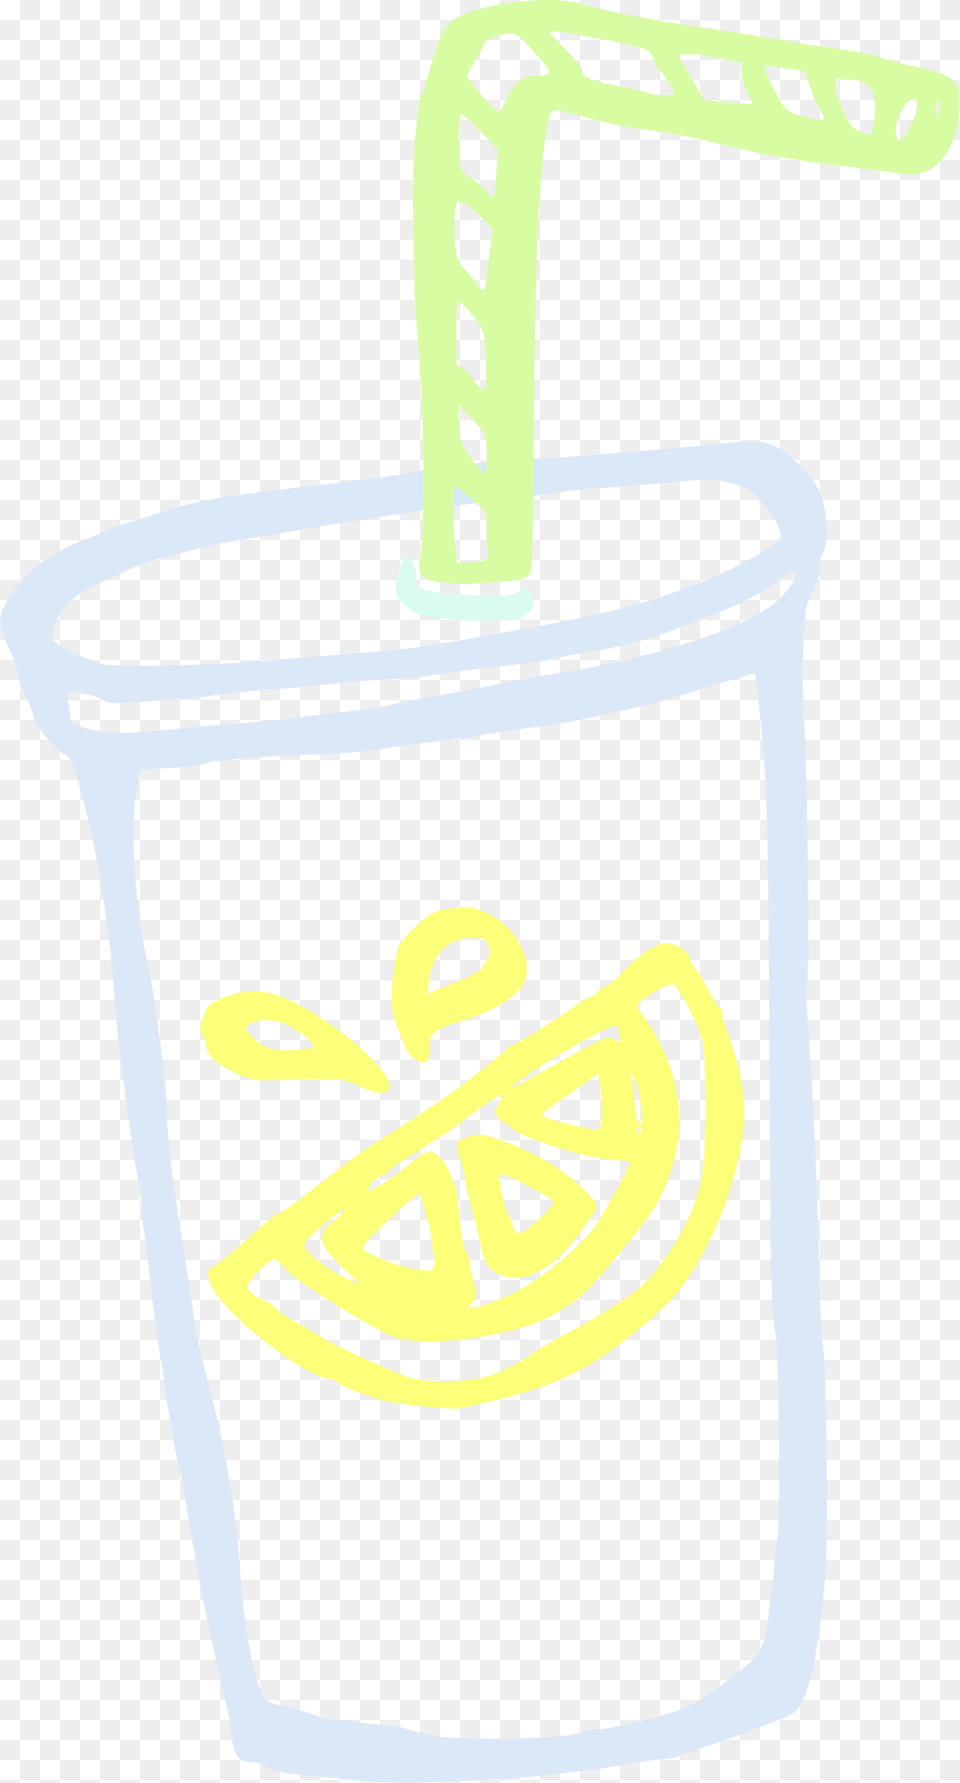 Lemonade Linda Kim Cup With Straw Animated, Smoke Pipe Png